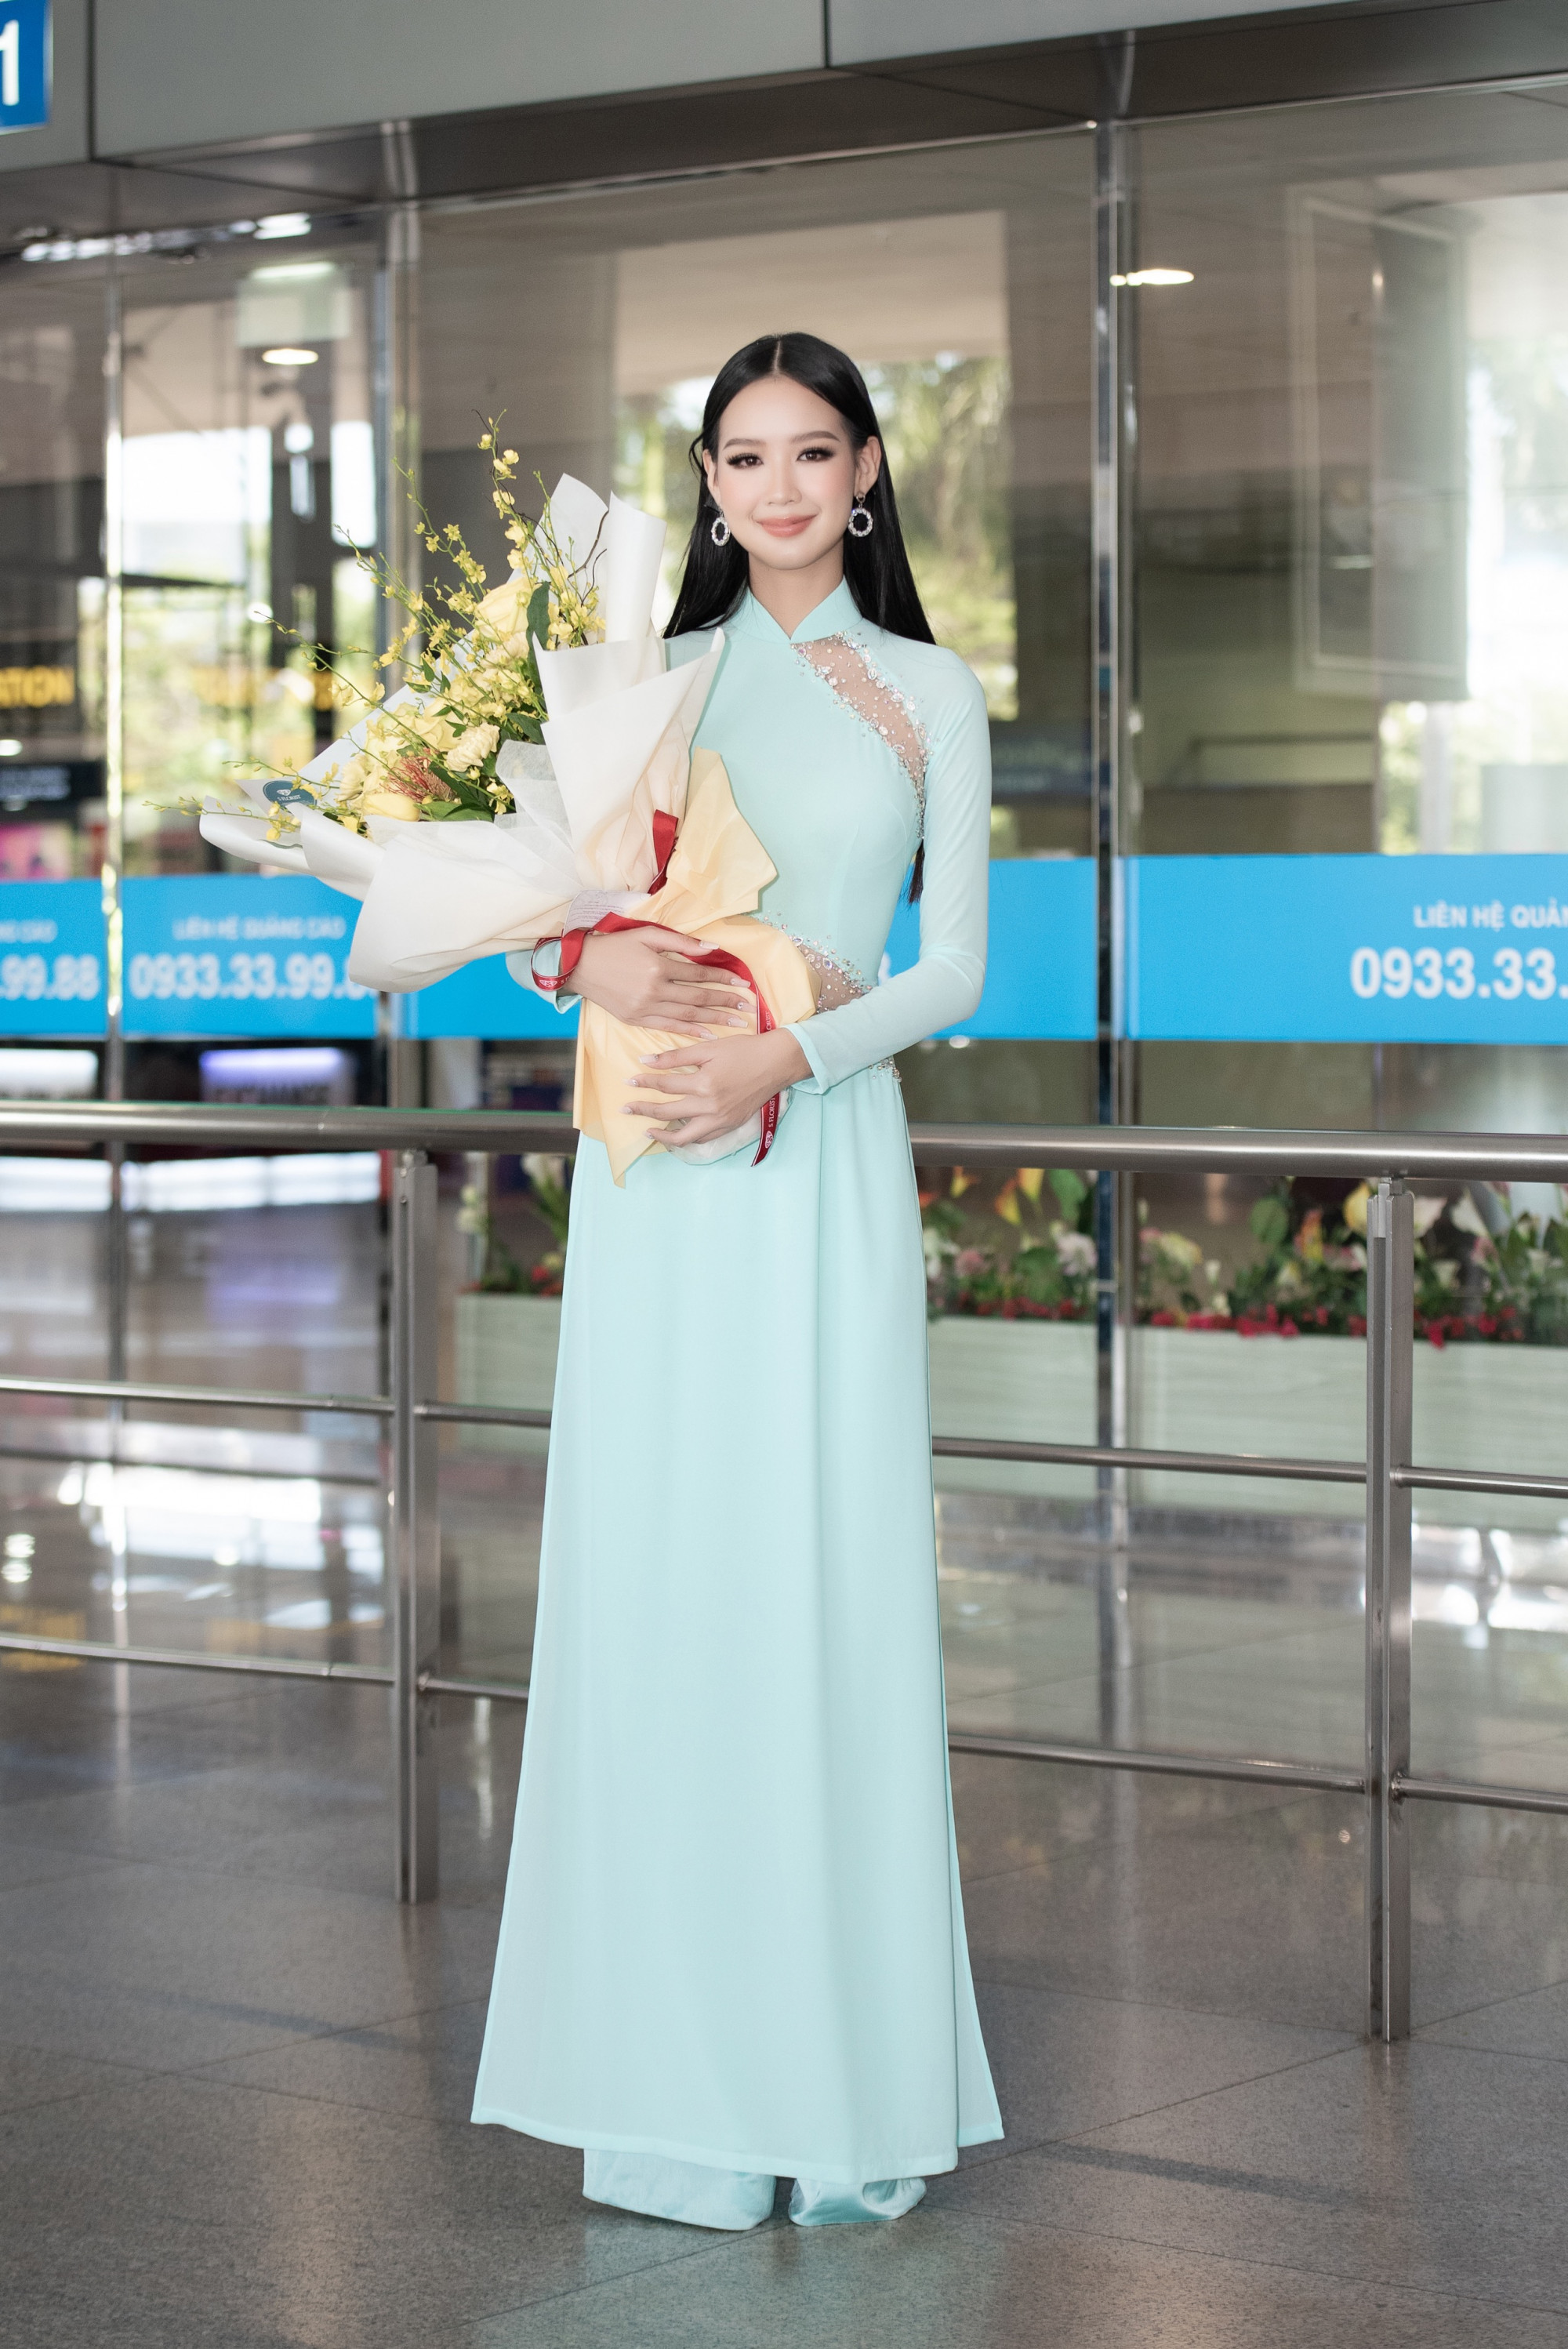 Bảo Ngọc sẽ đại diện Việt Nam tham dự Hoa hậu Liên lục địa 2022, tổ chức từ 27/9 đến 14/10 tại 